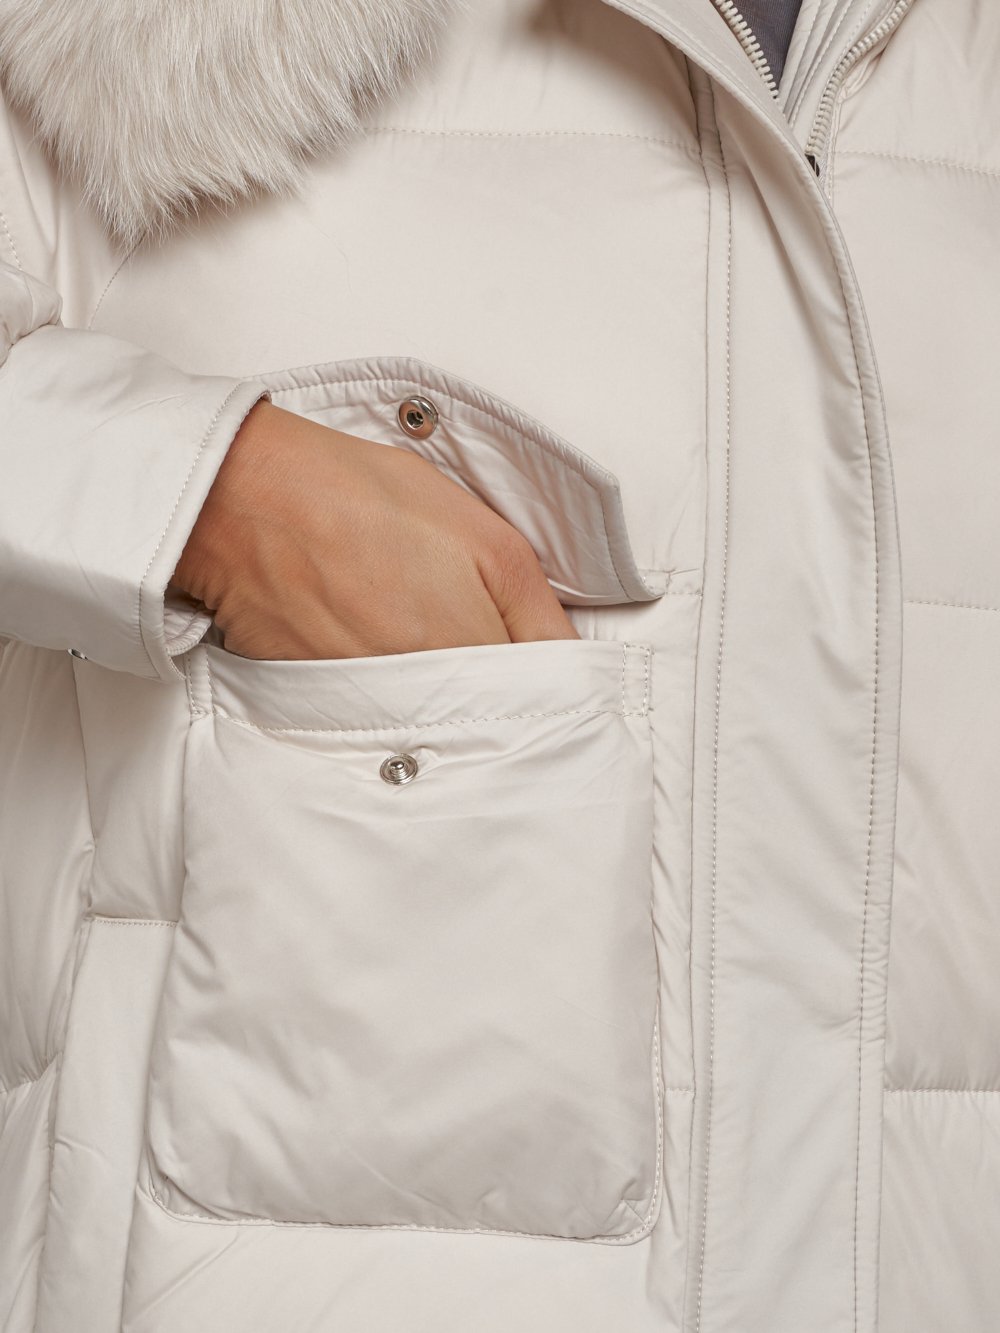 Купить куртку женскую оптом от производителя недорого в Москве 13301B 1